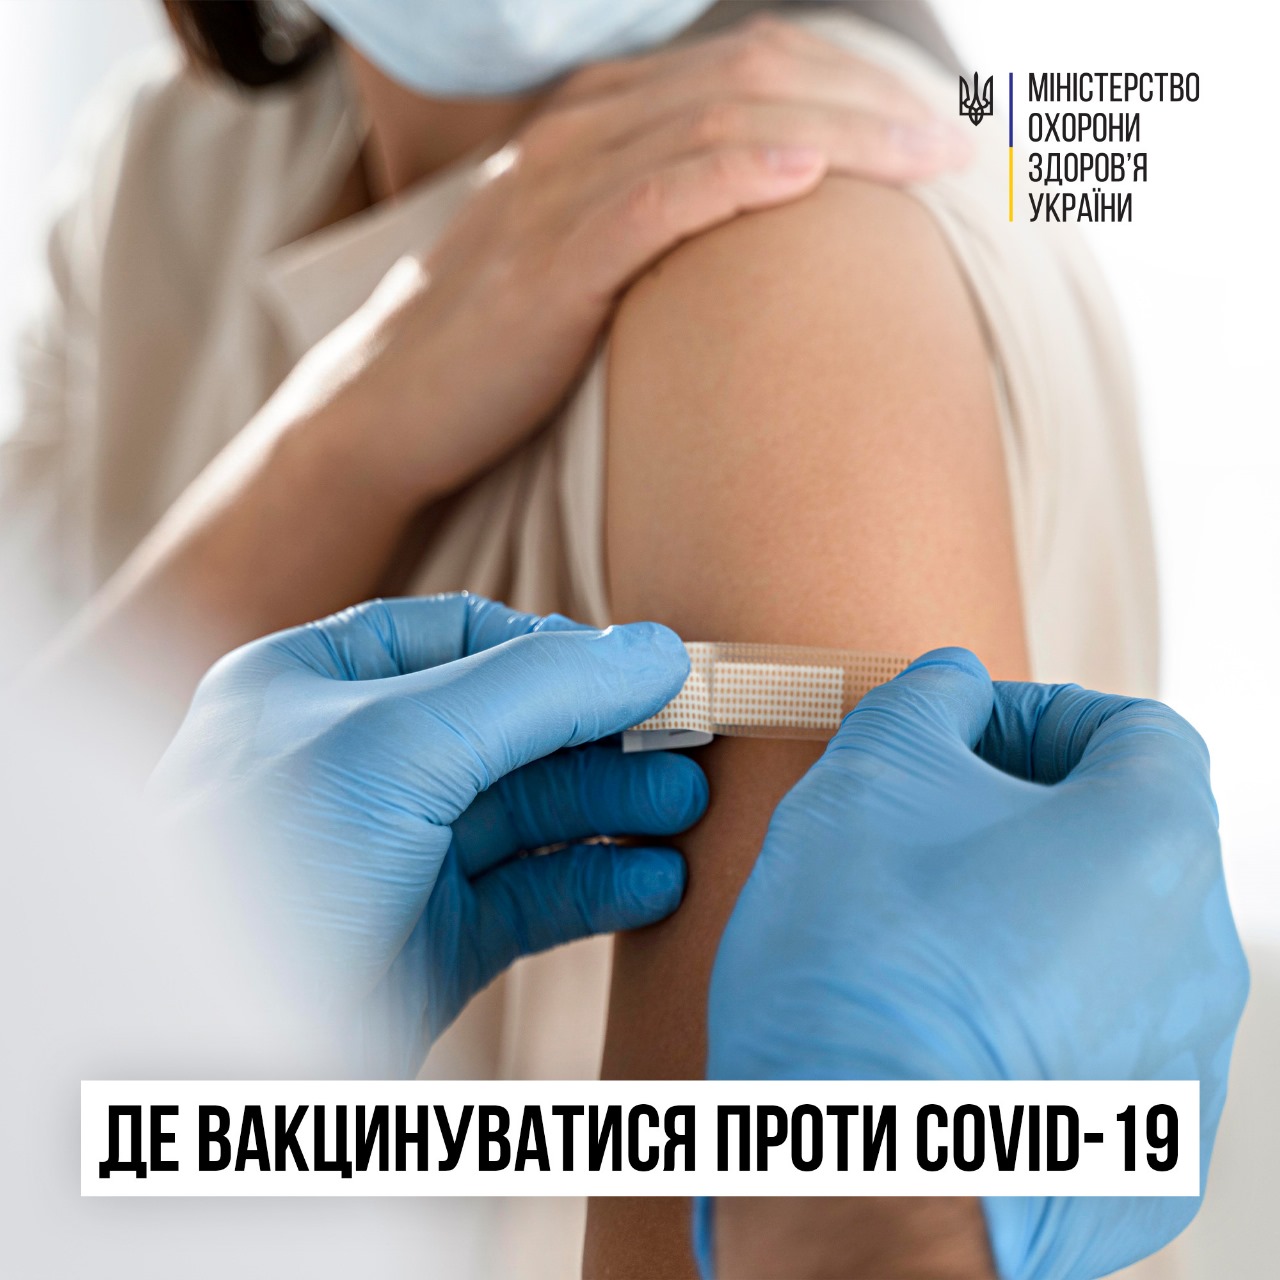 Пункти щеплень проти COVID-19 в медичних закладах: як дізнатись про наявність вакцин та графік роботи?